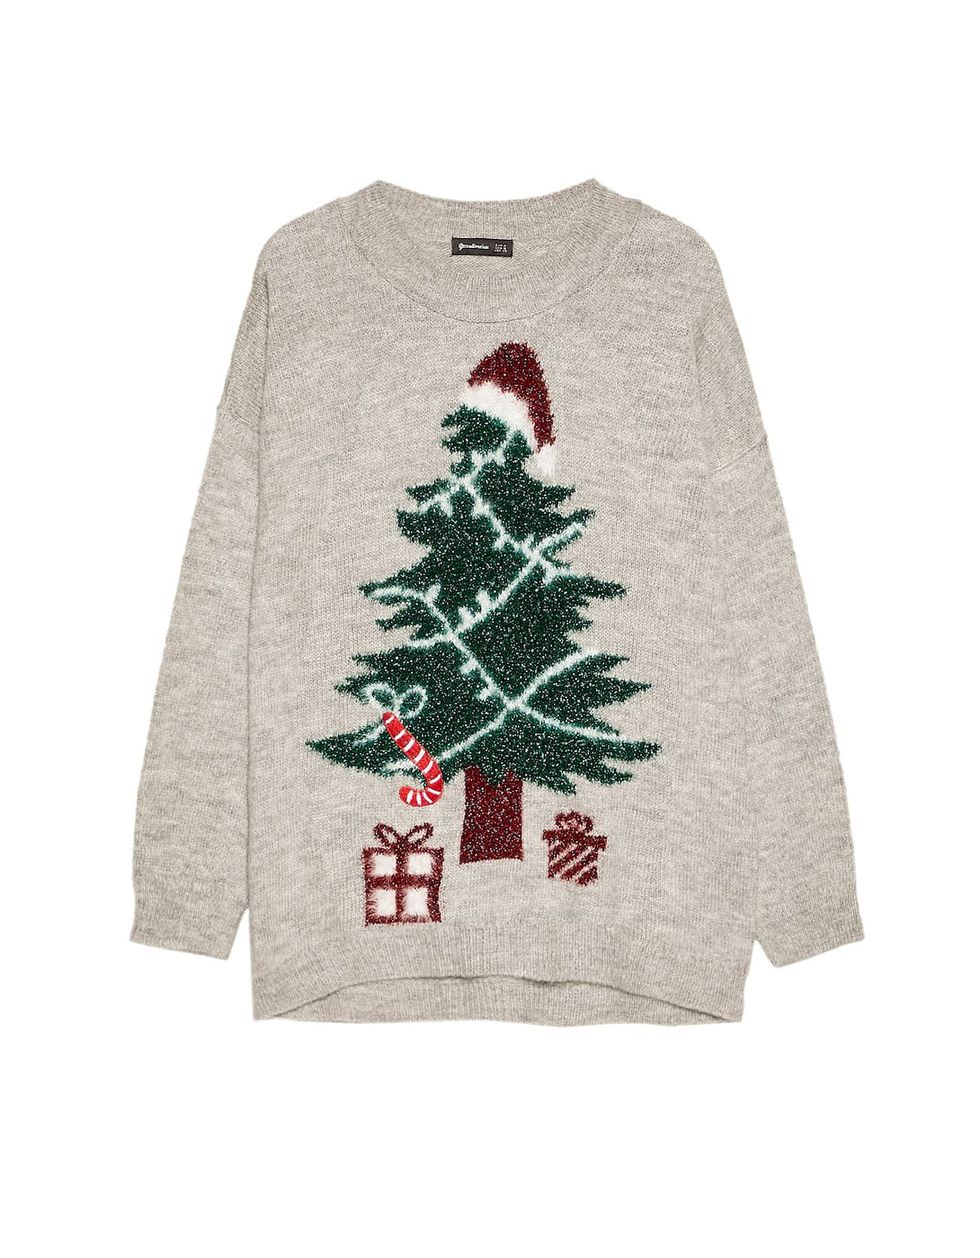 Jersey con árbol de Navidad y regalos, 25,99€